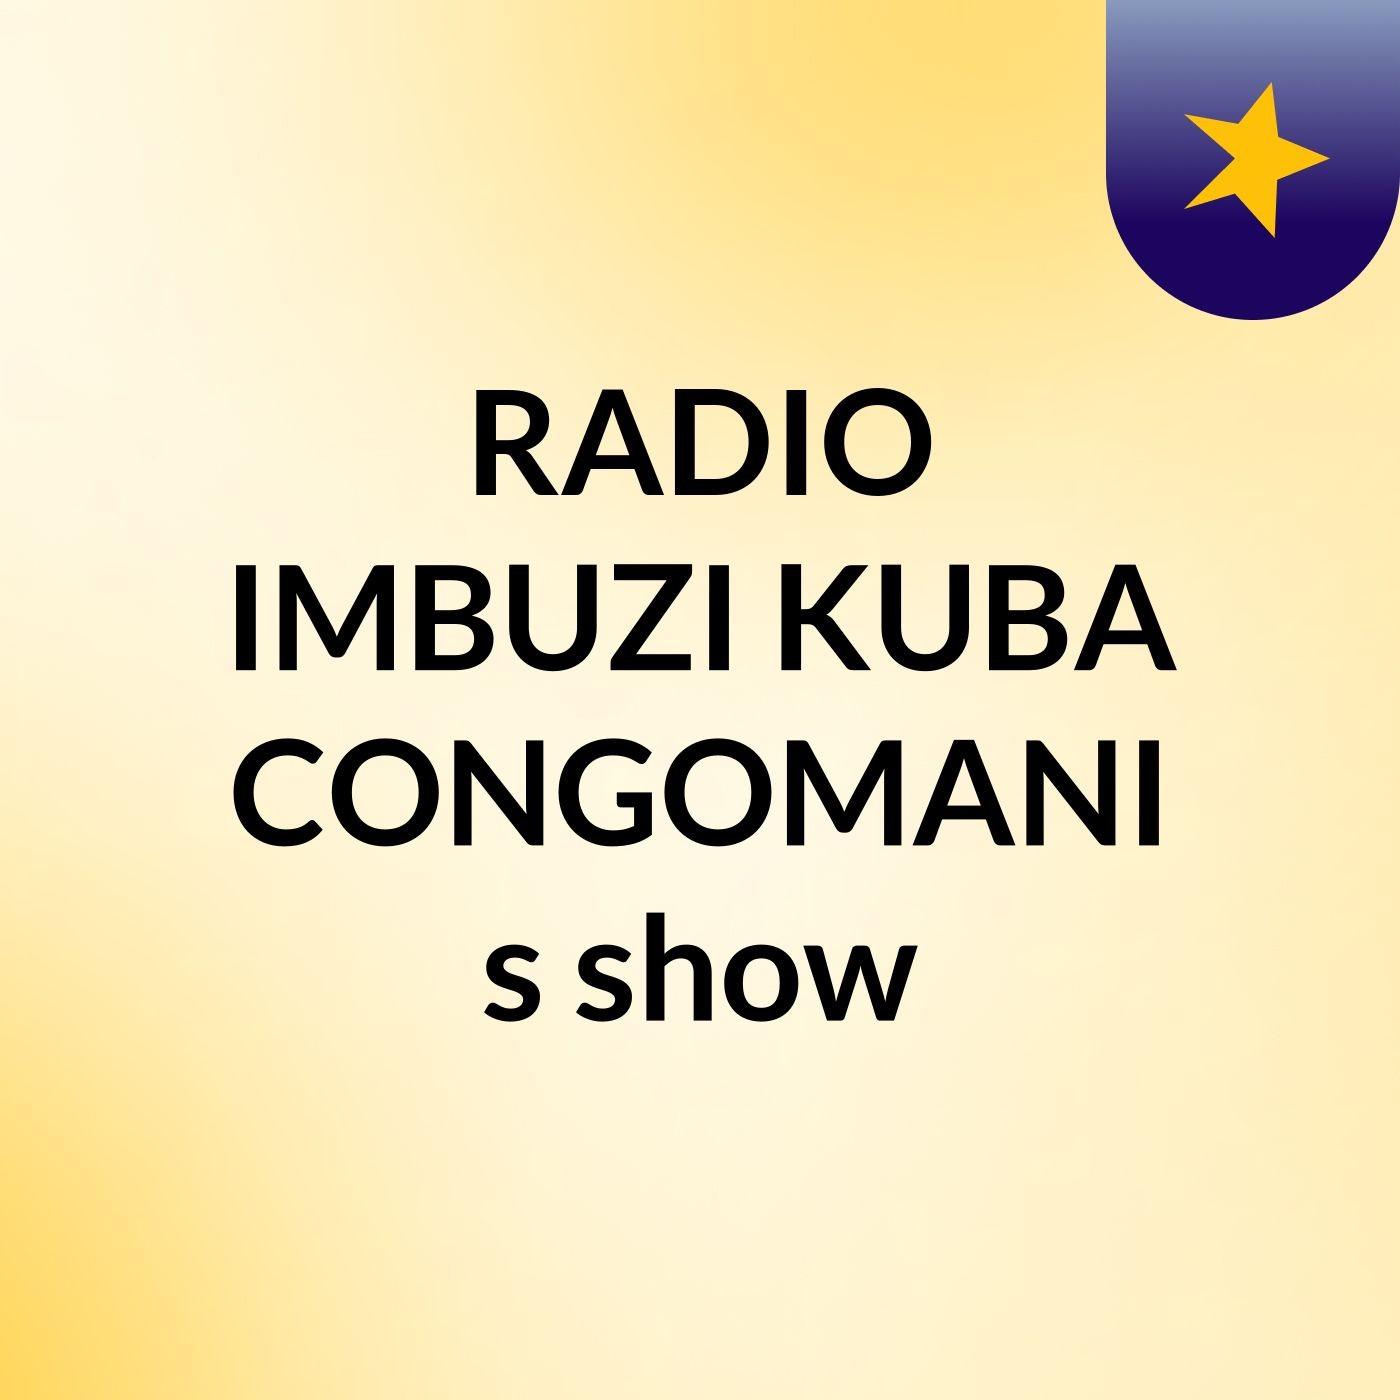 Episode 15 - RADIO IMBUZI KUBA CONGOMANI's show